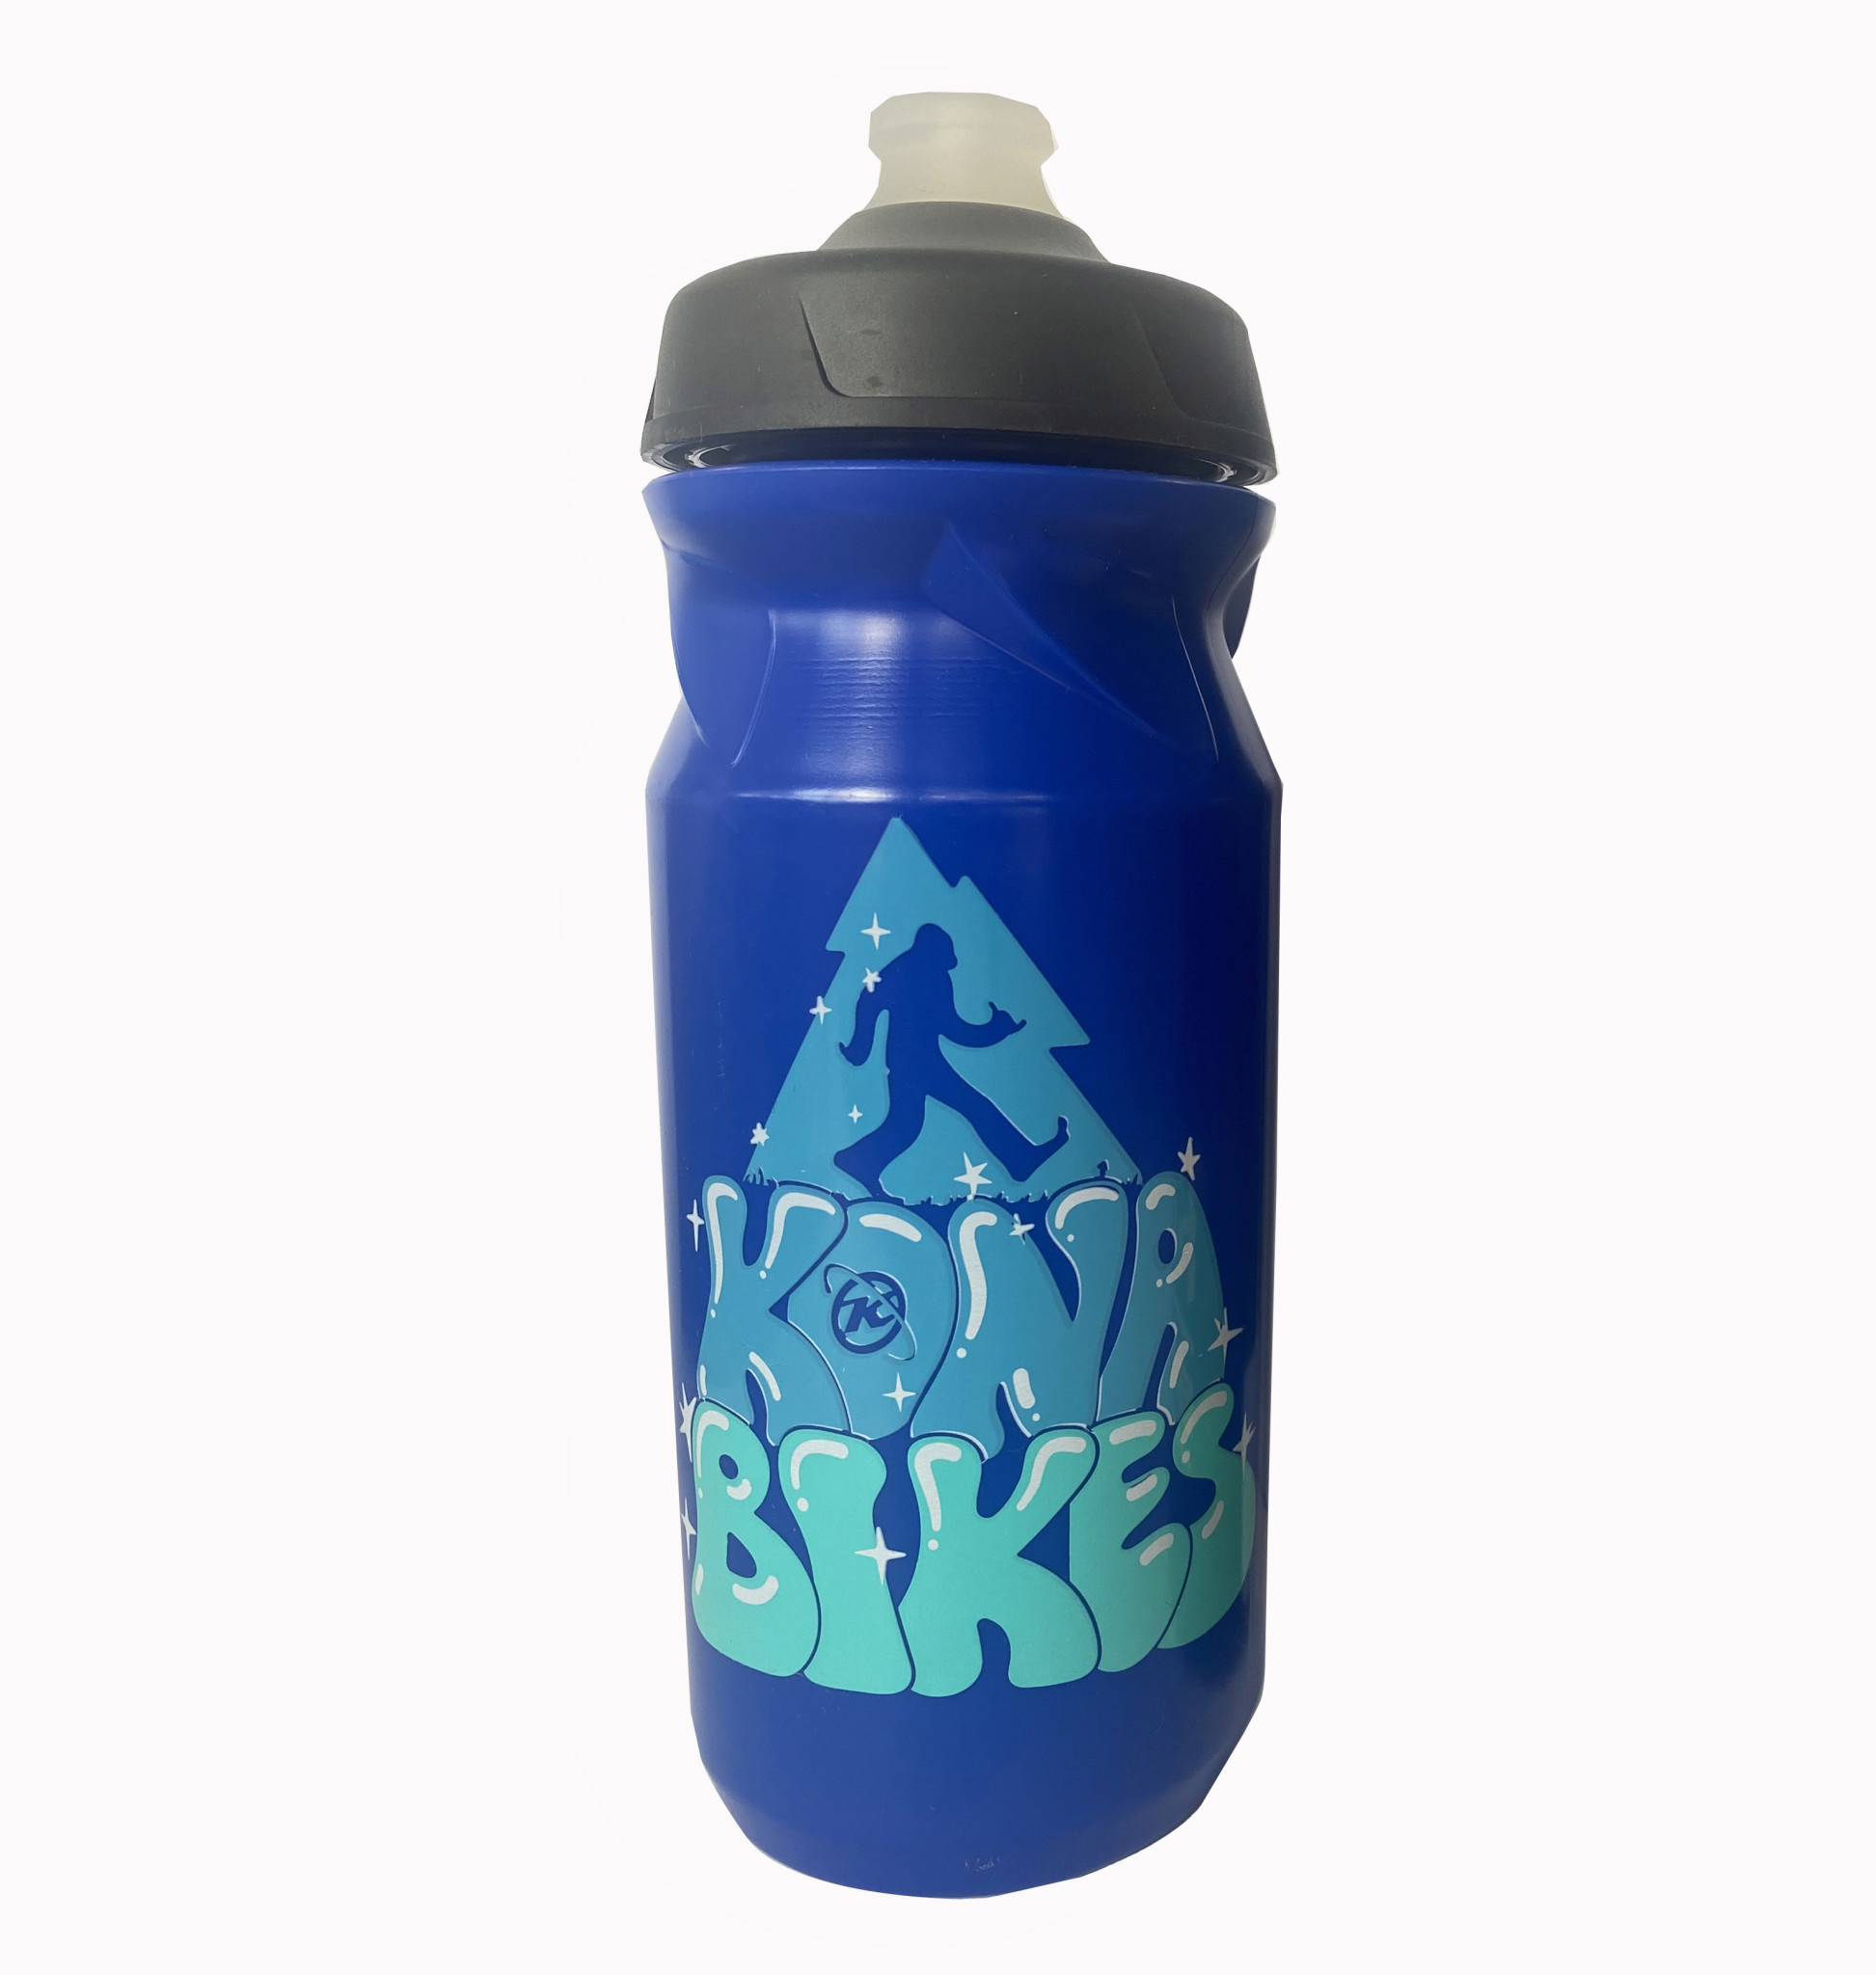 Kona Water Bottle Trippin